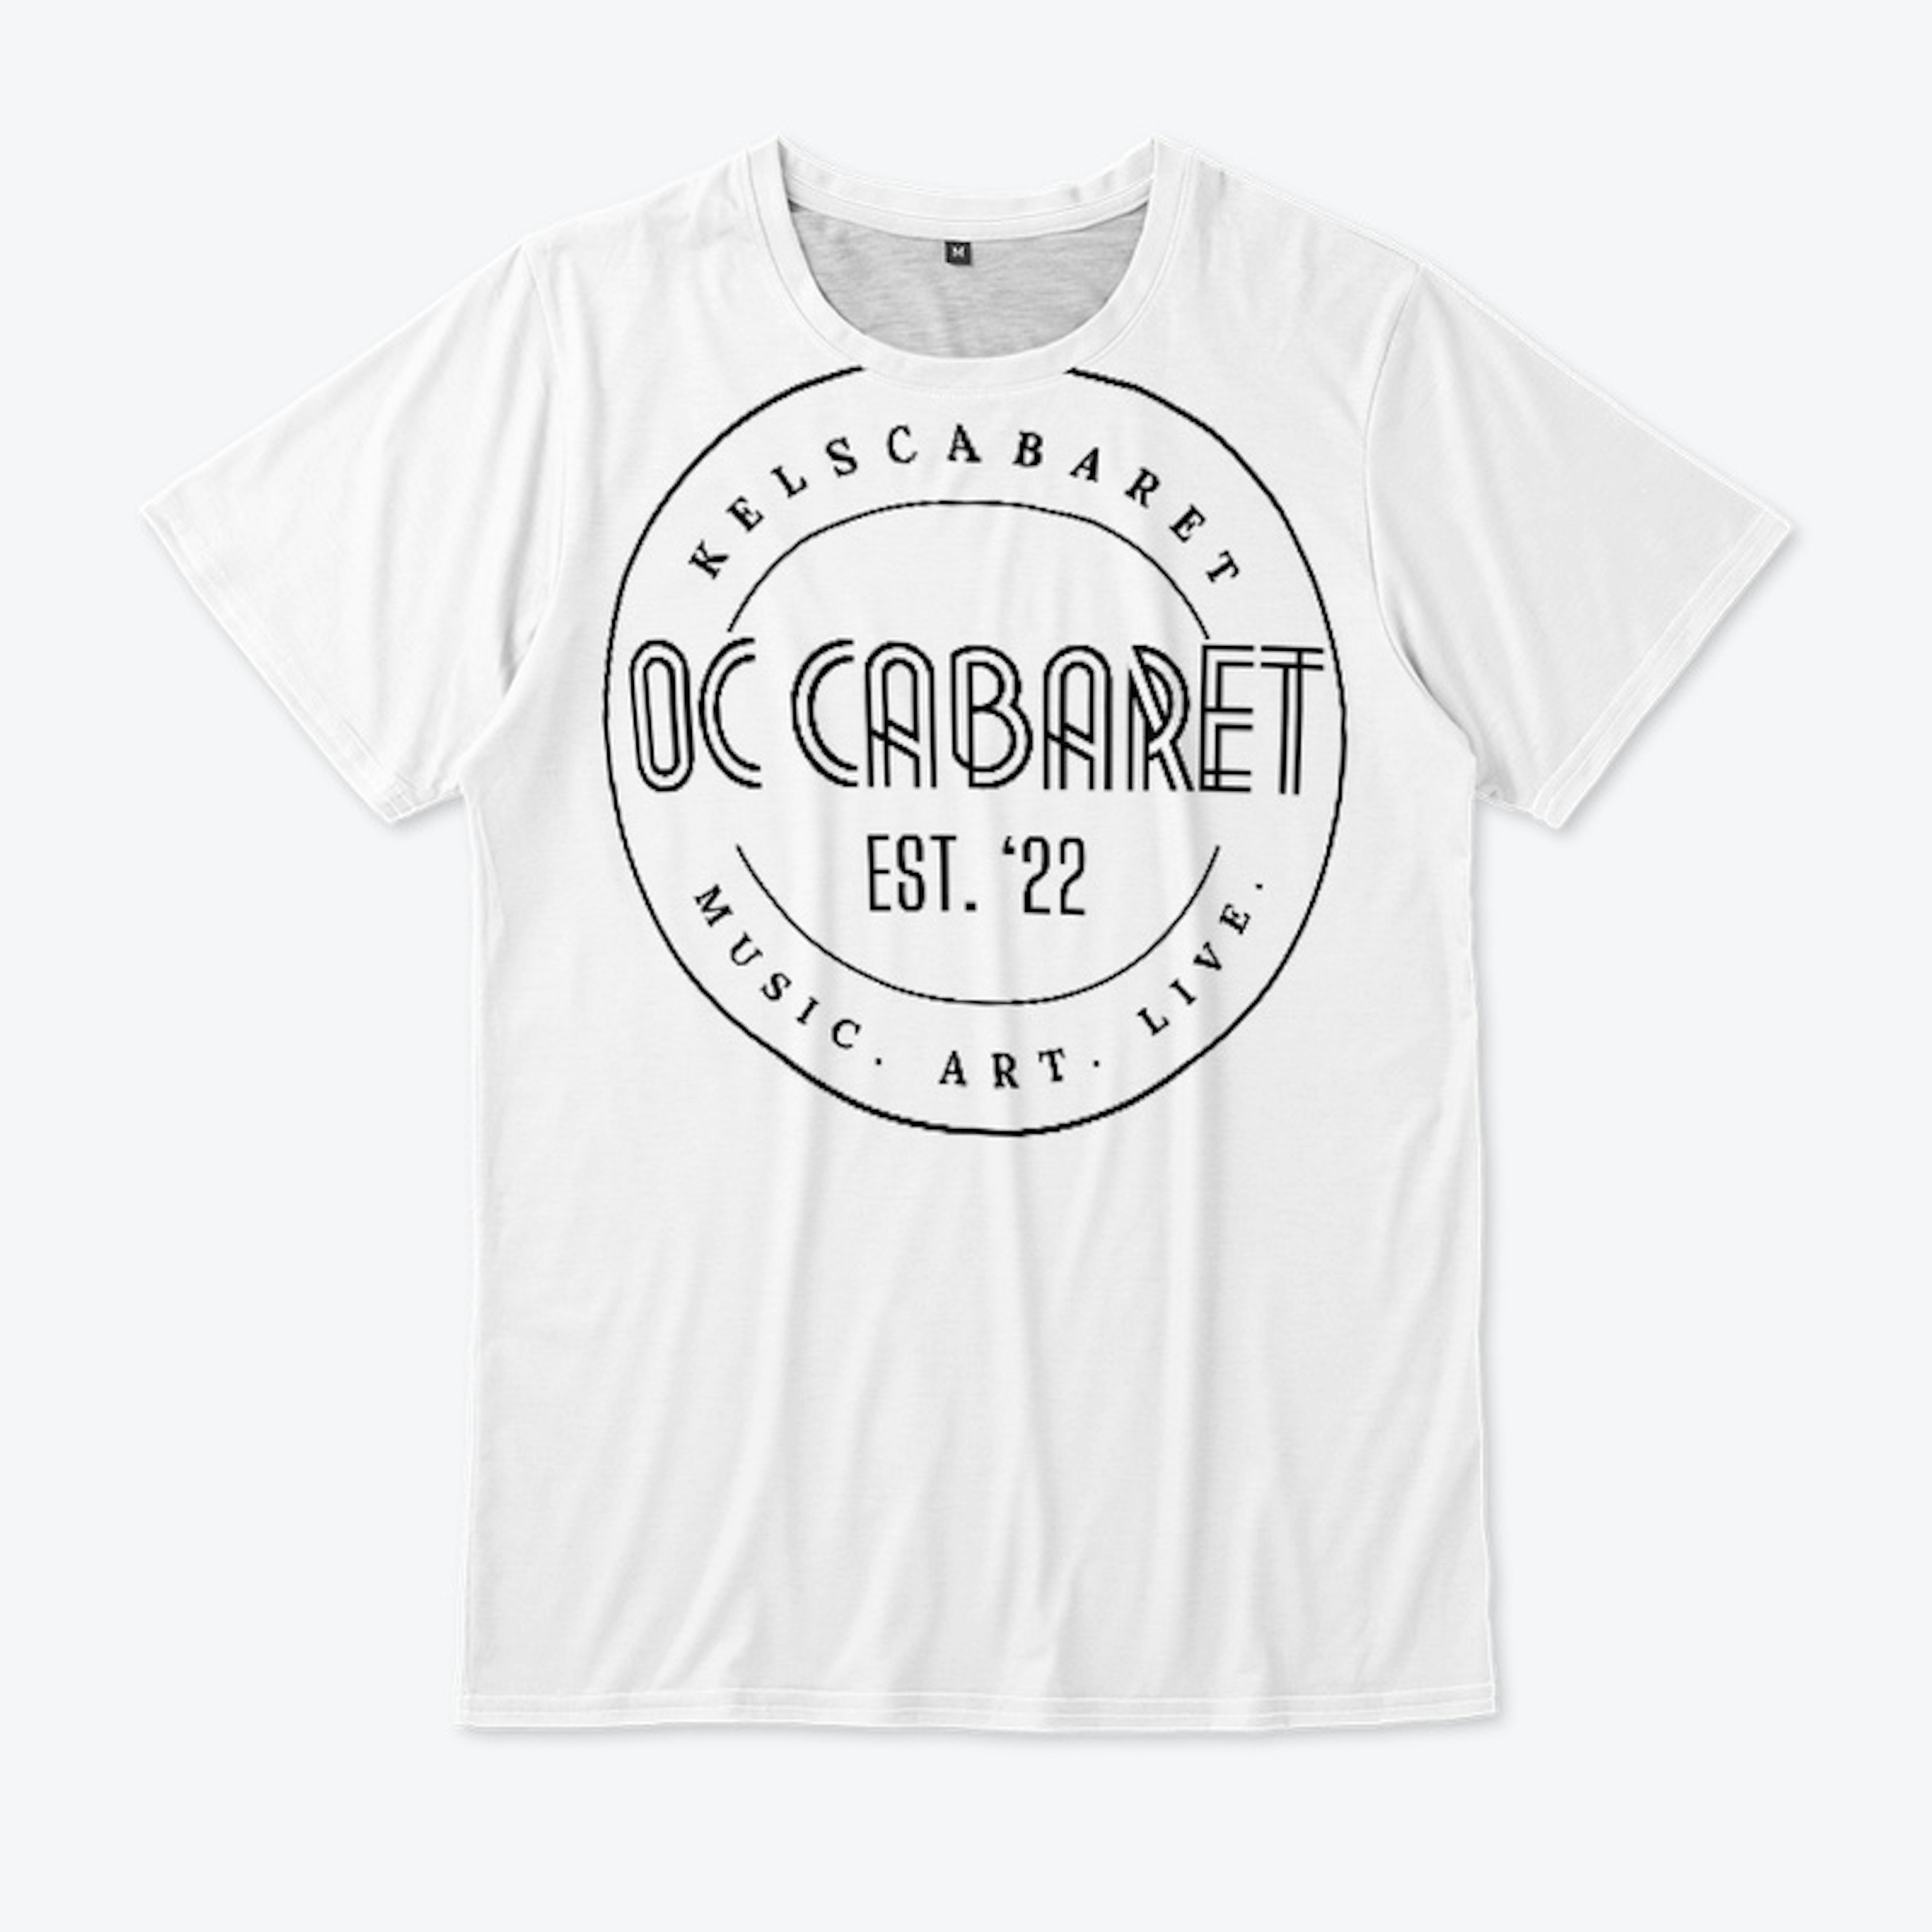 OC Cabaret Est. ‘22